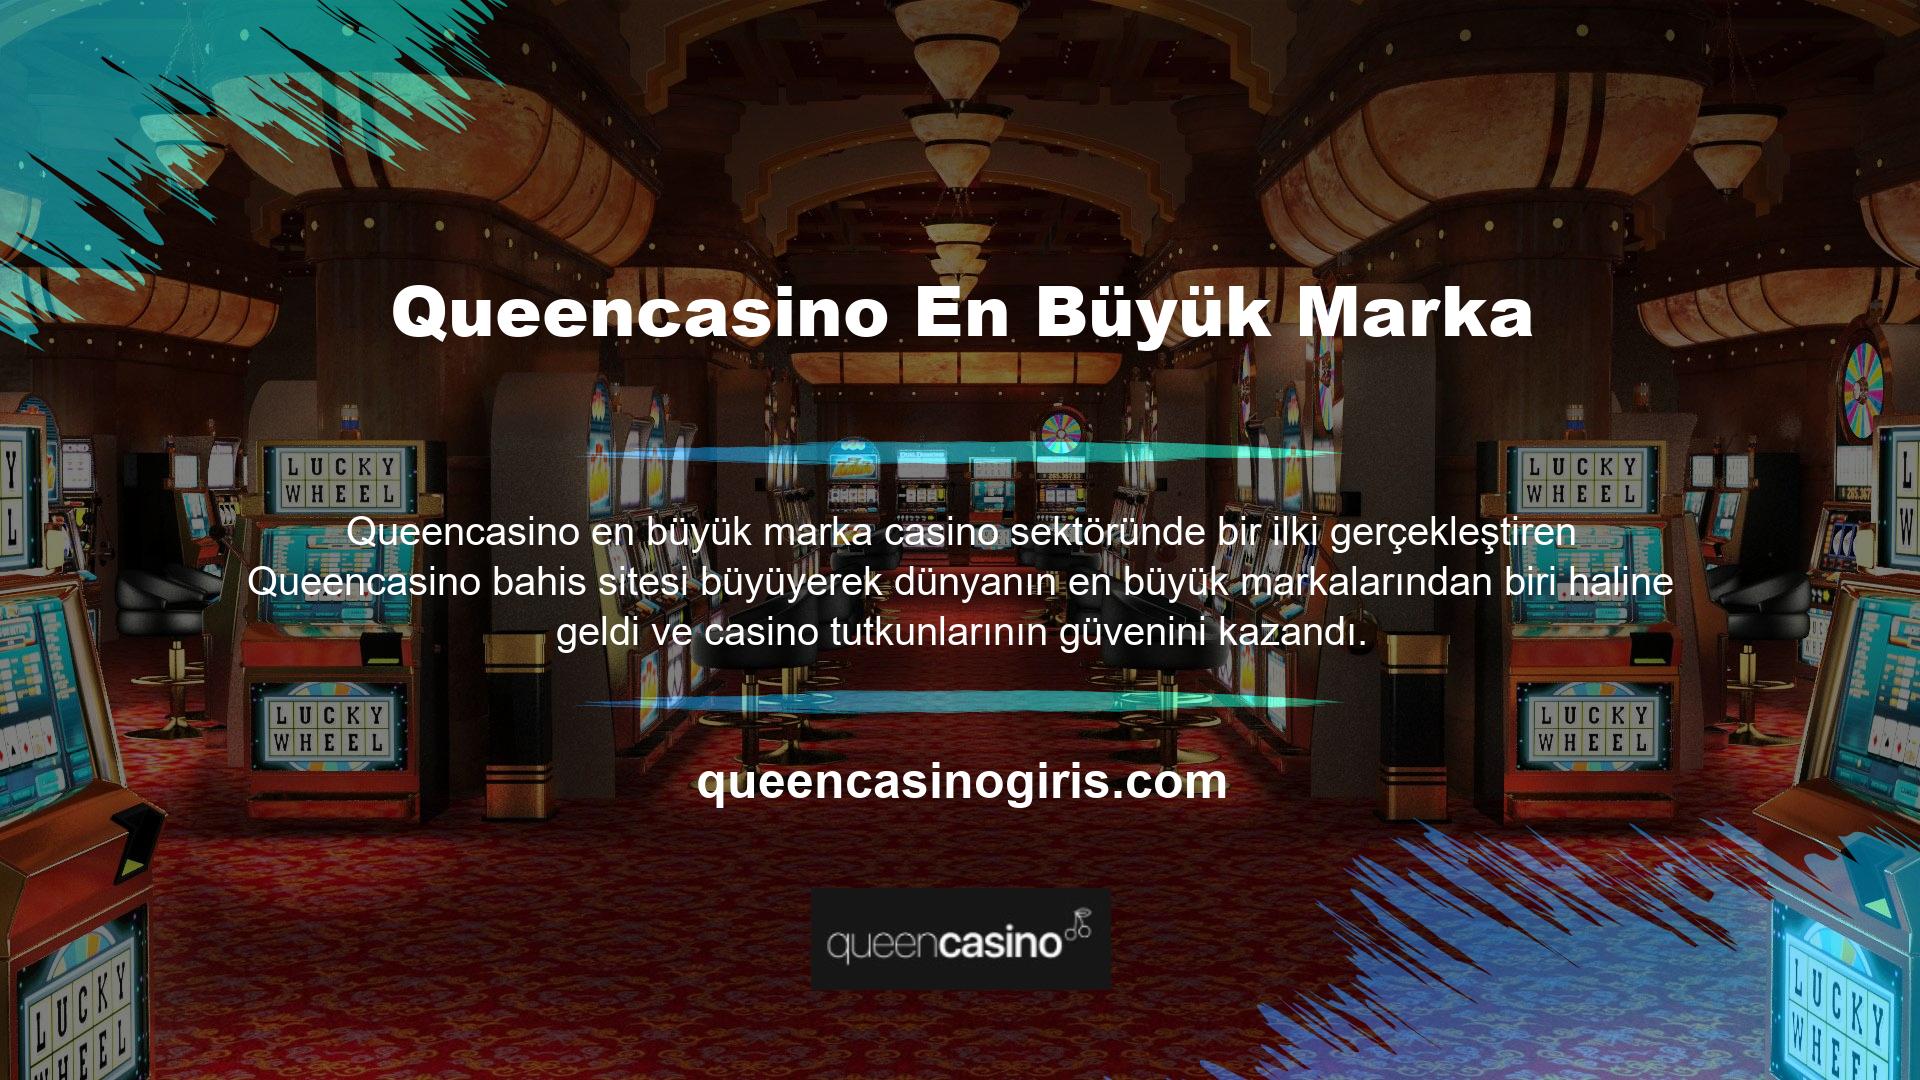 Daha önce de belirtildiği gibi, Queencasino web sitesinin kullanımı ancak üyelik şartlarını yerine getirdiğiniz takdirde mümkündür